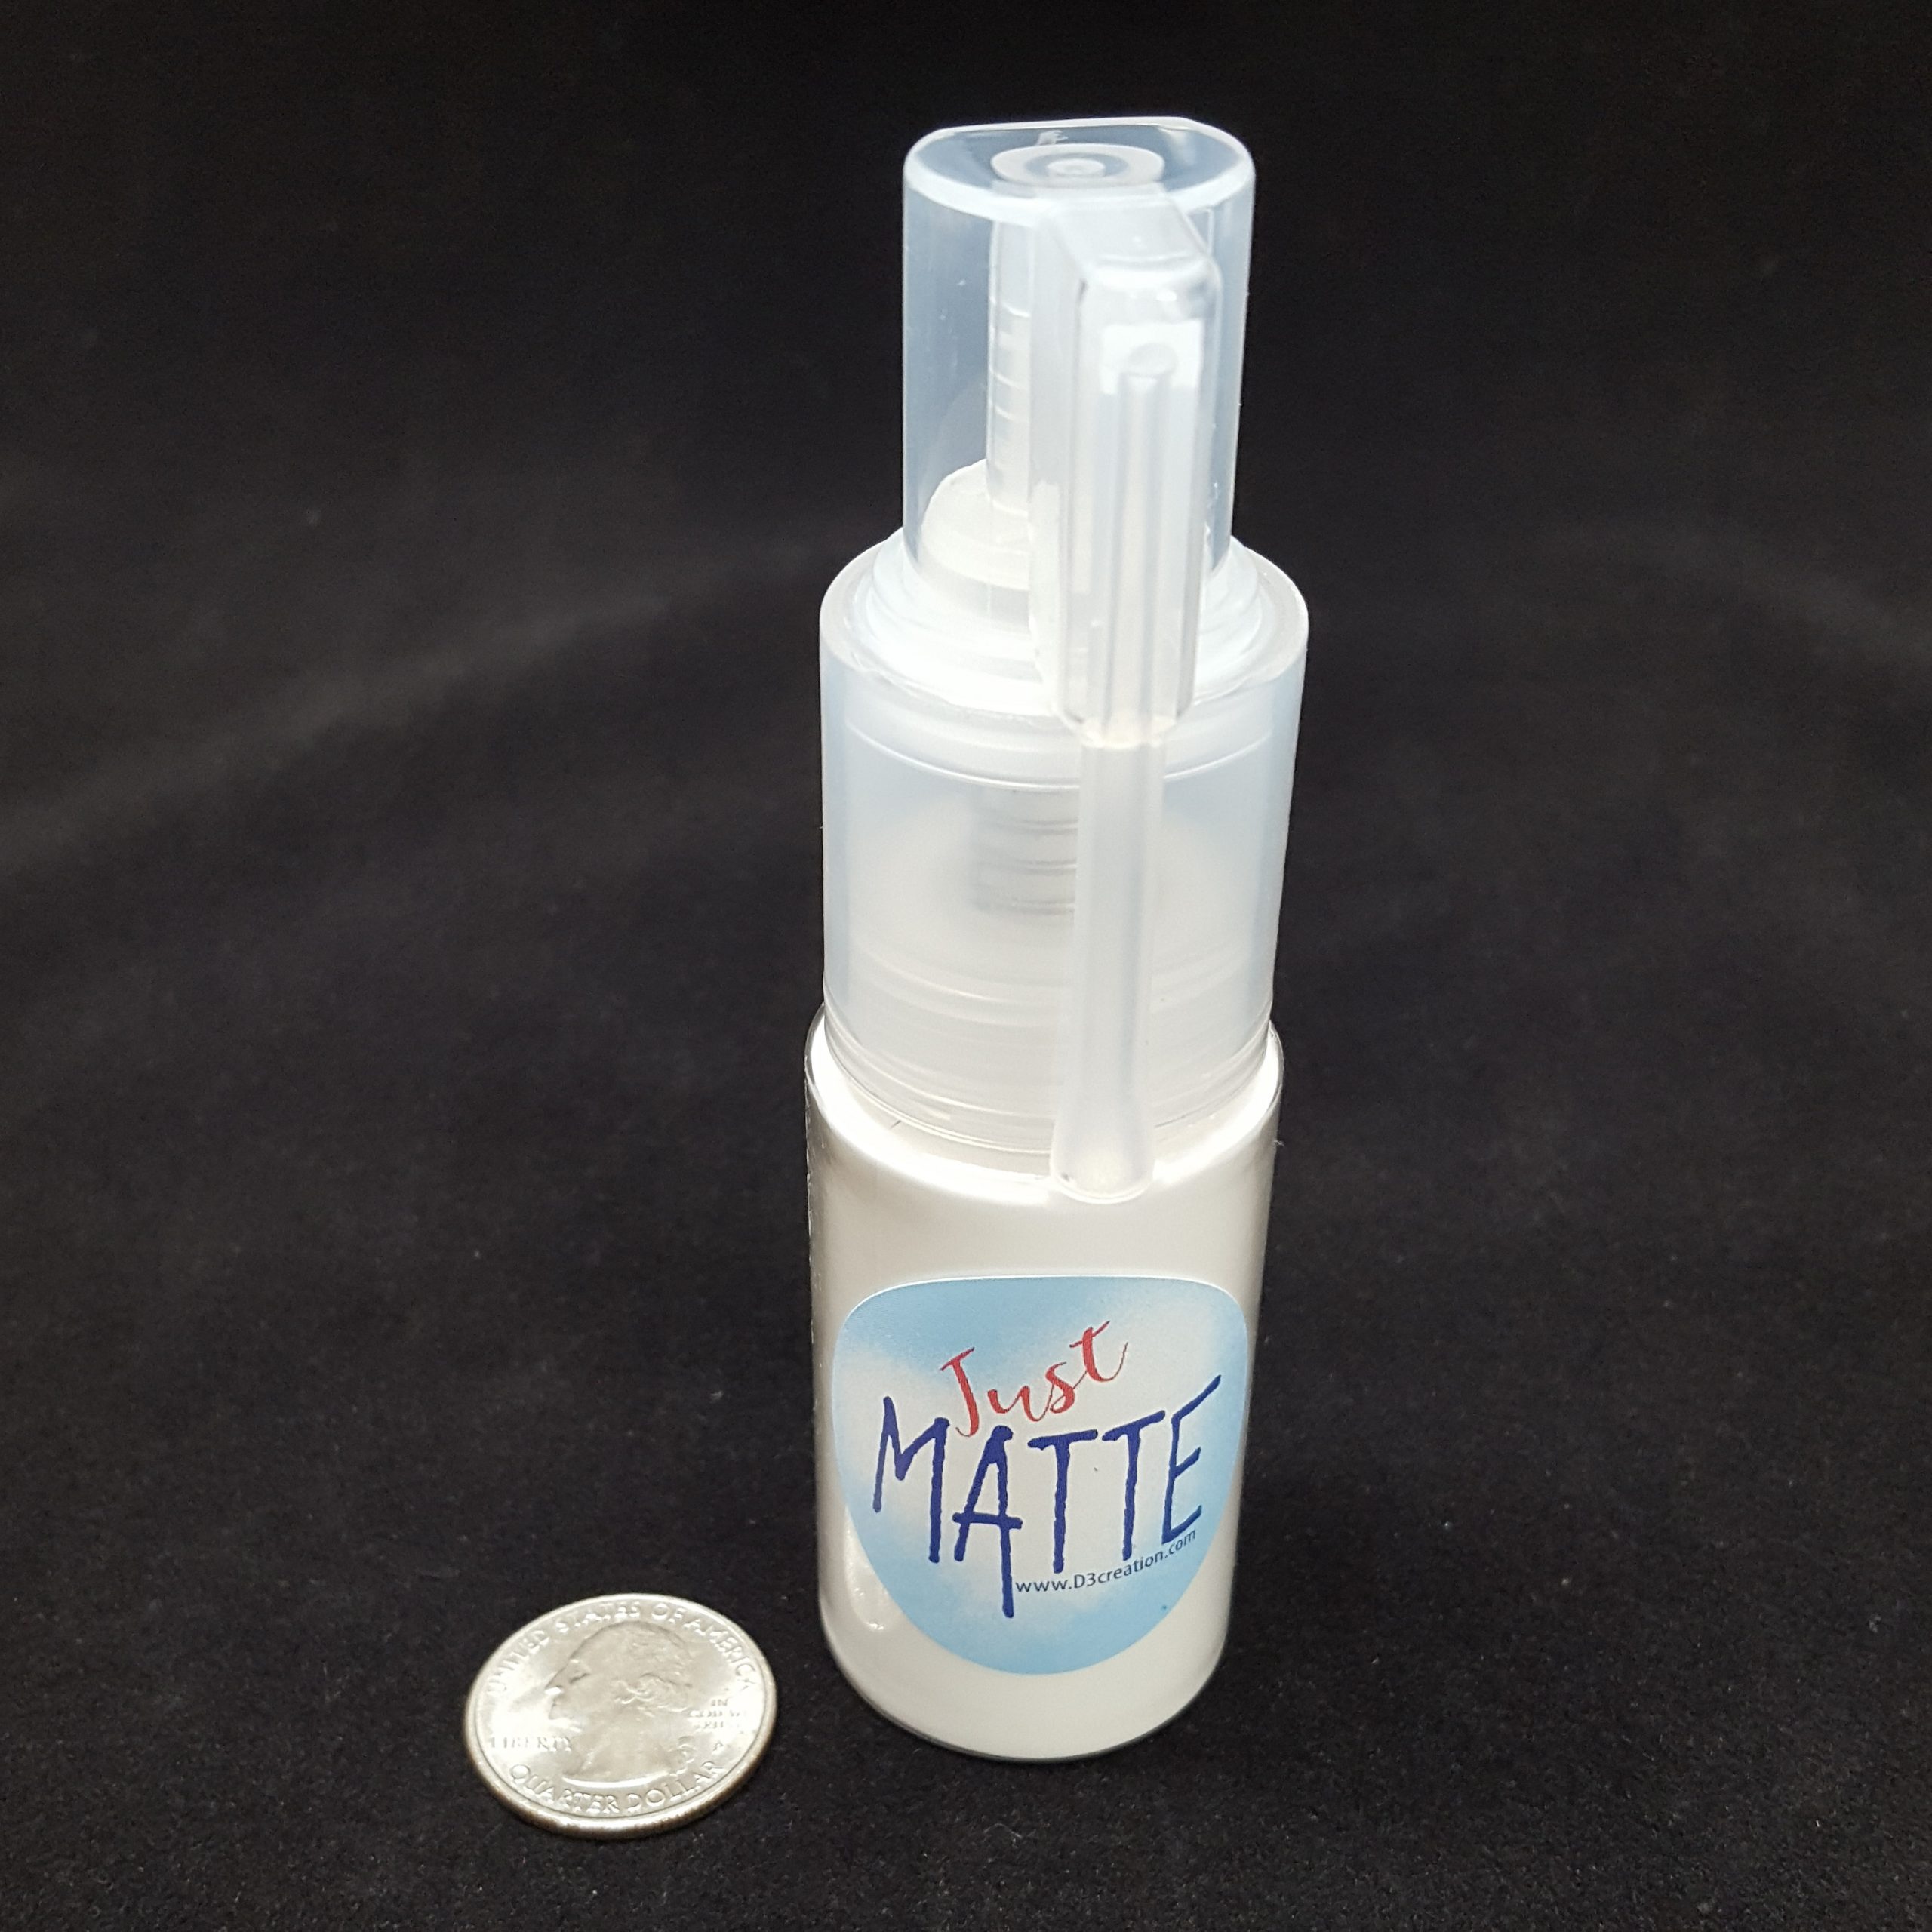 15g Powder Spray matting powder for silicone